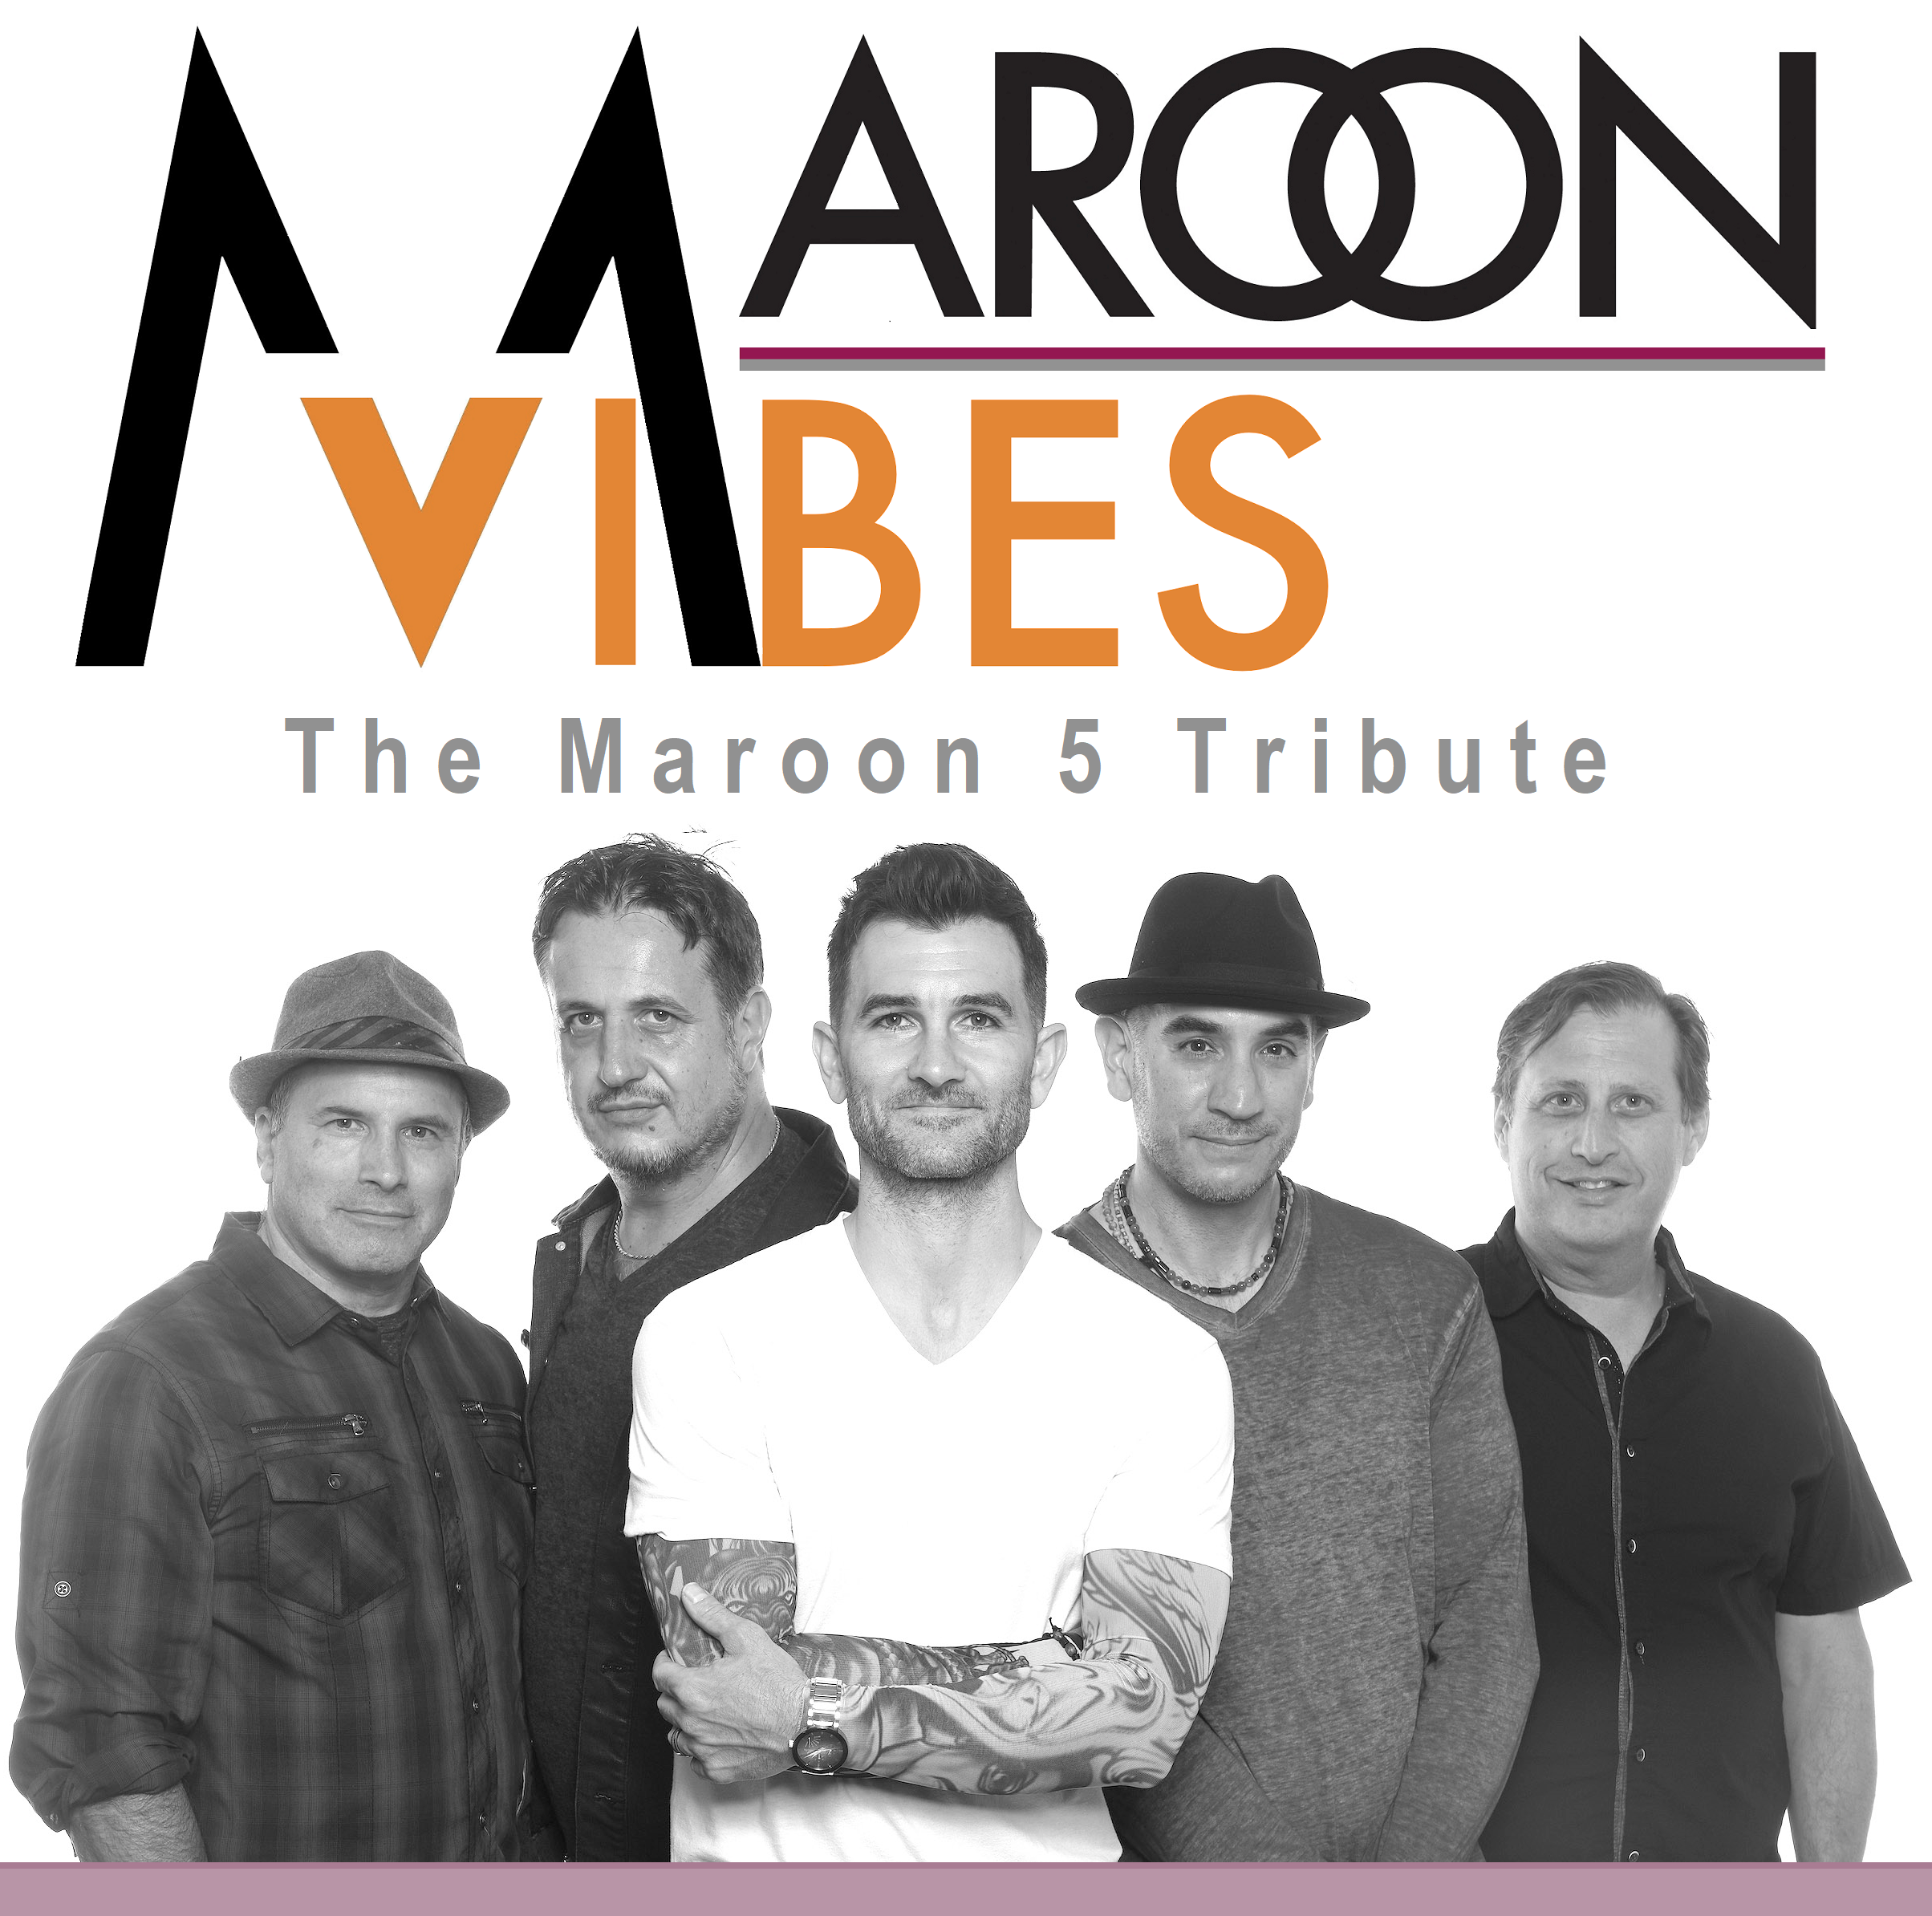 Maroon Vibes